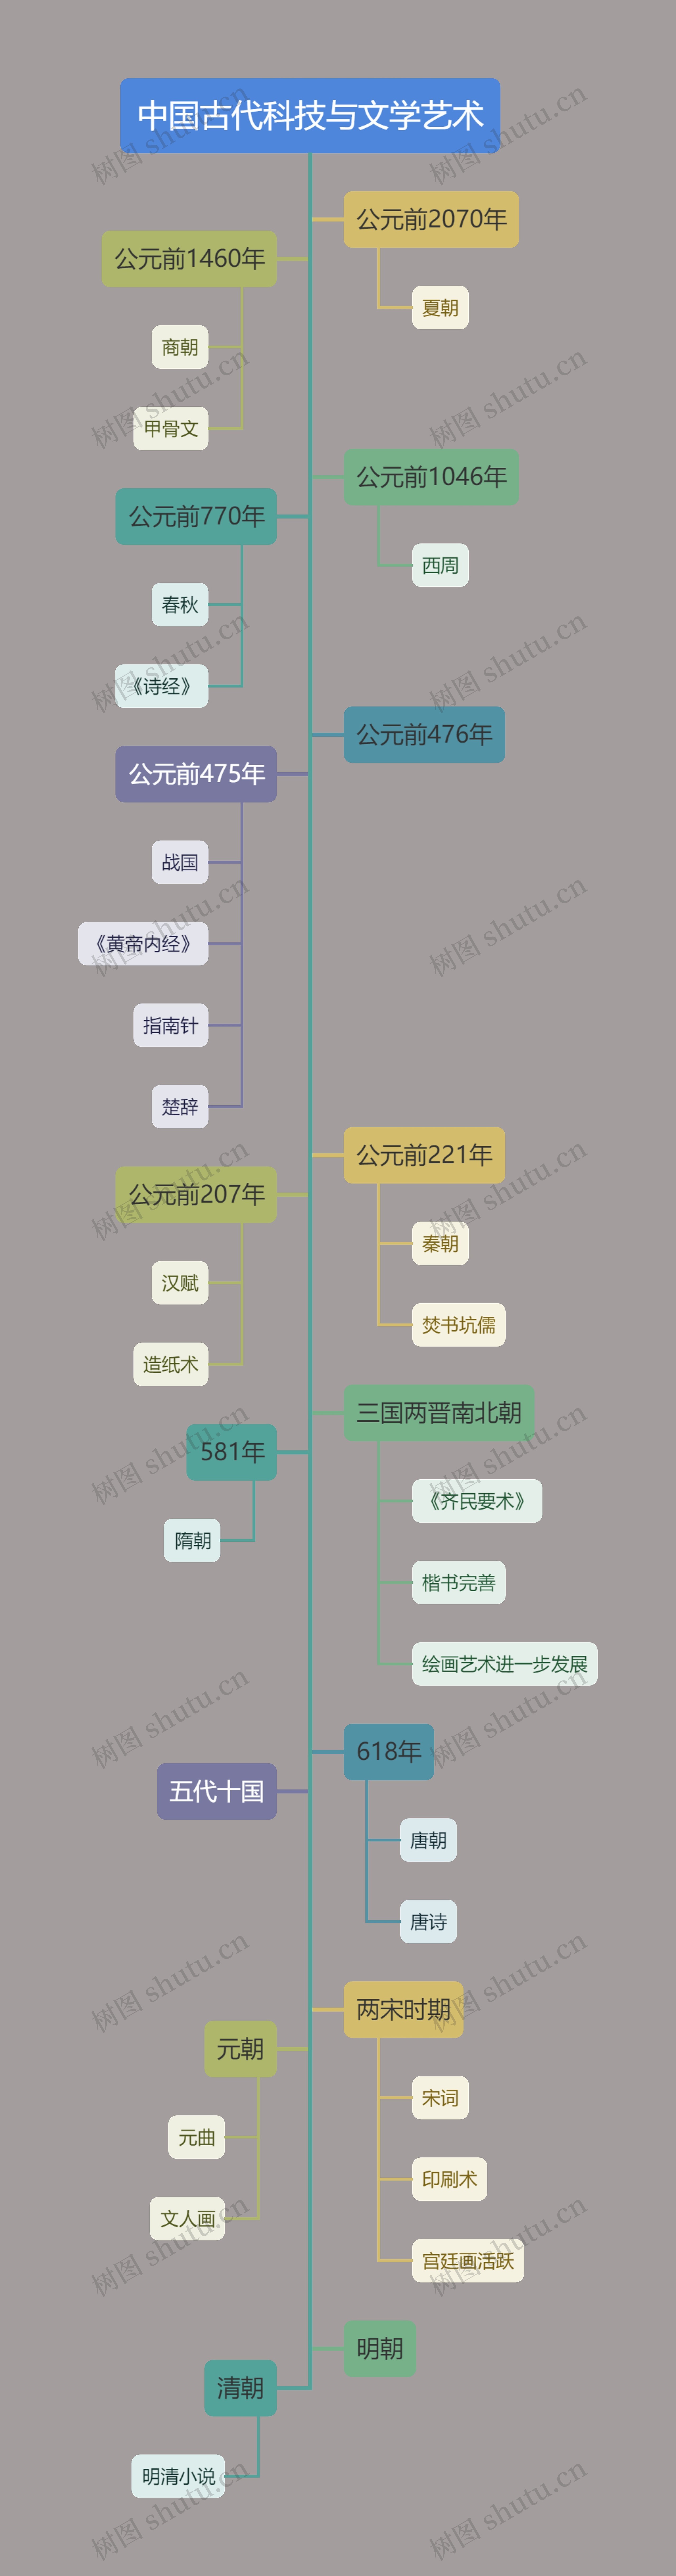 莫兰迪经典色系中国古代科技与文学艺术树状图